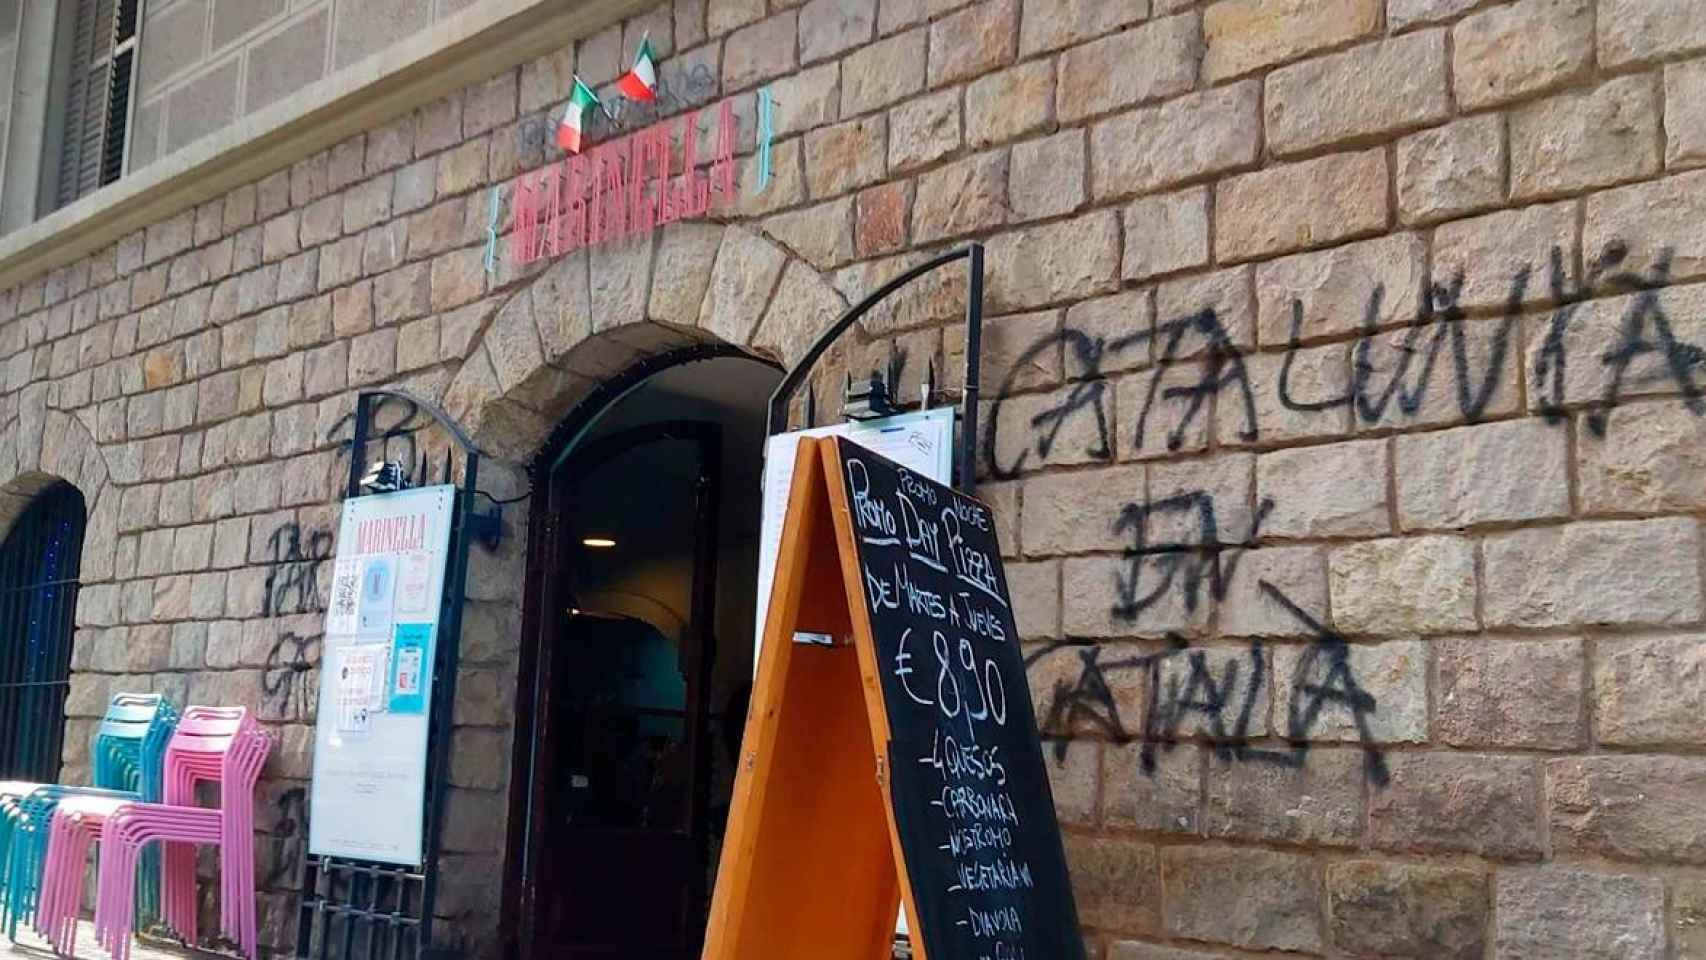 La fachada del Restaurante Marinella, con grafitis y amenazas / CG